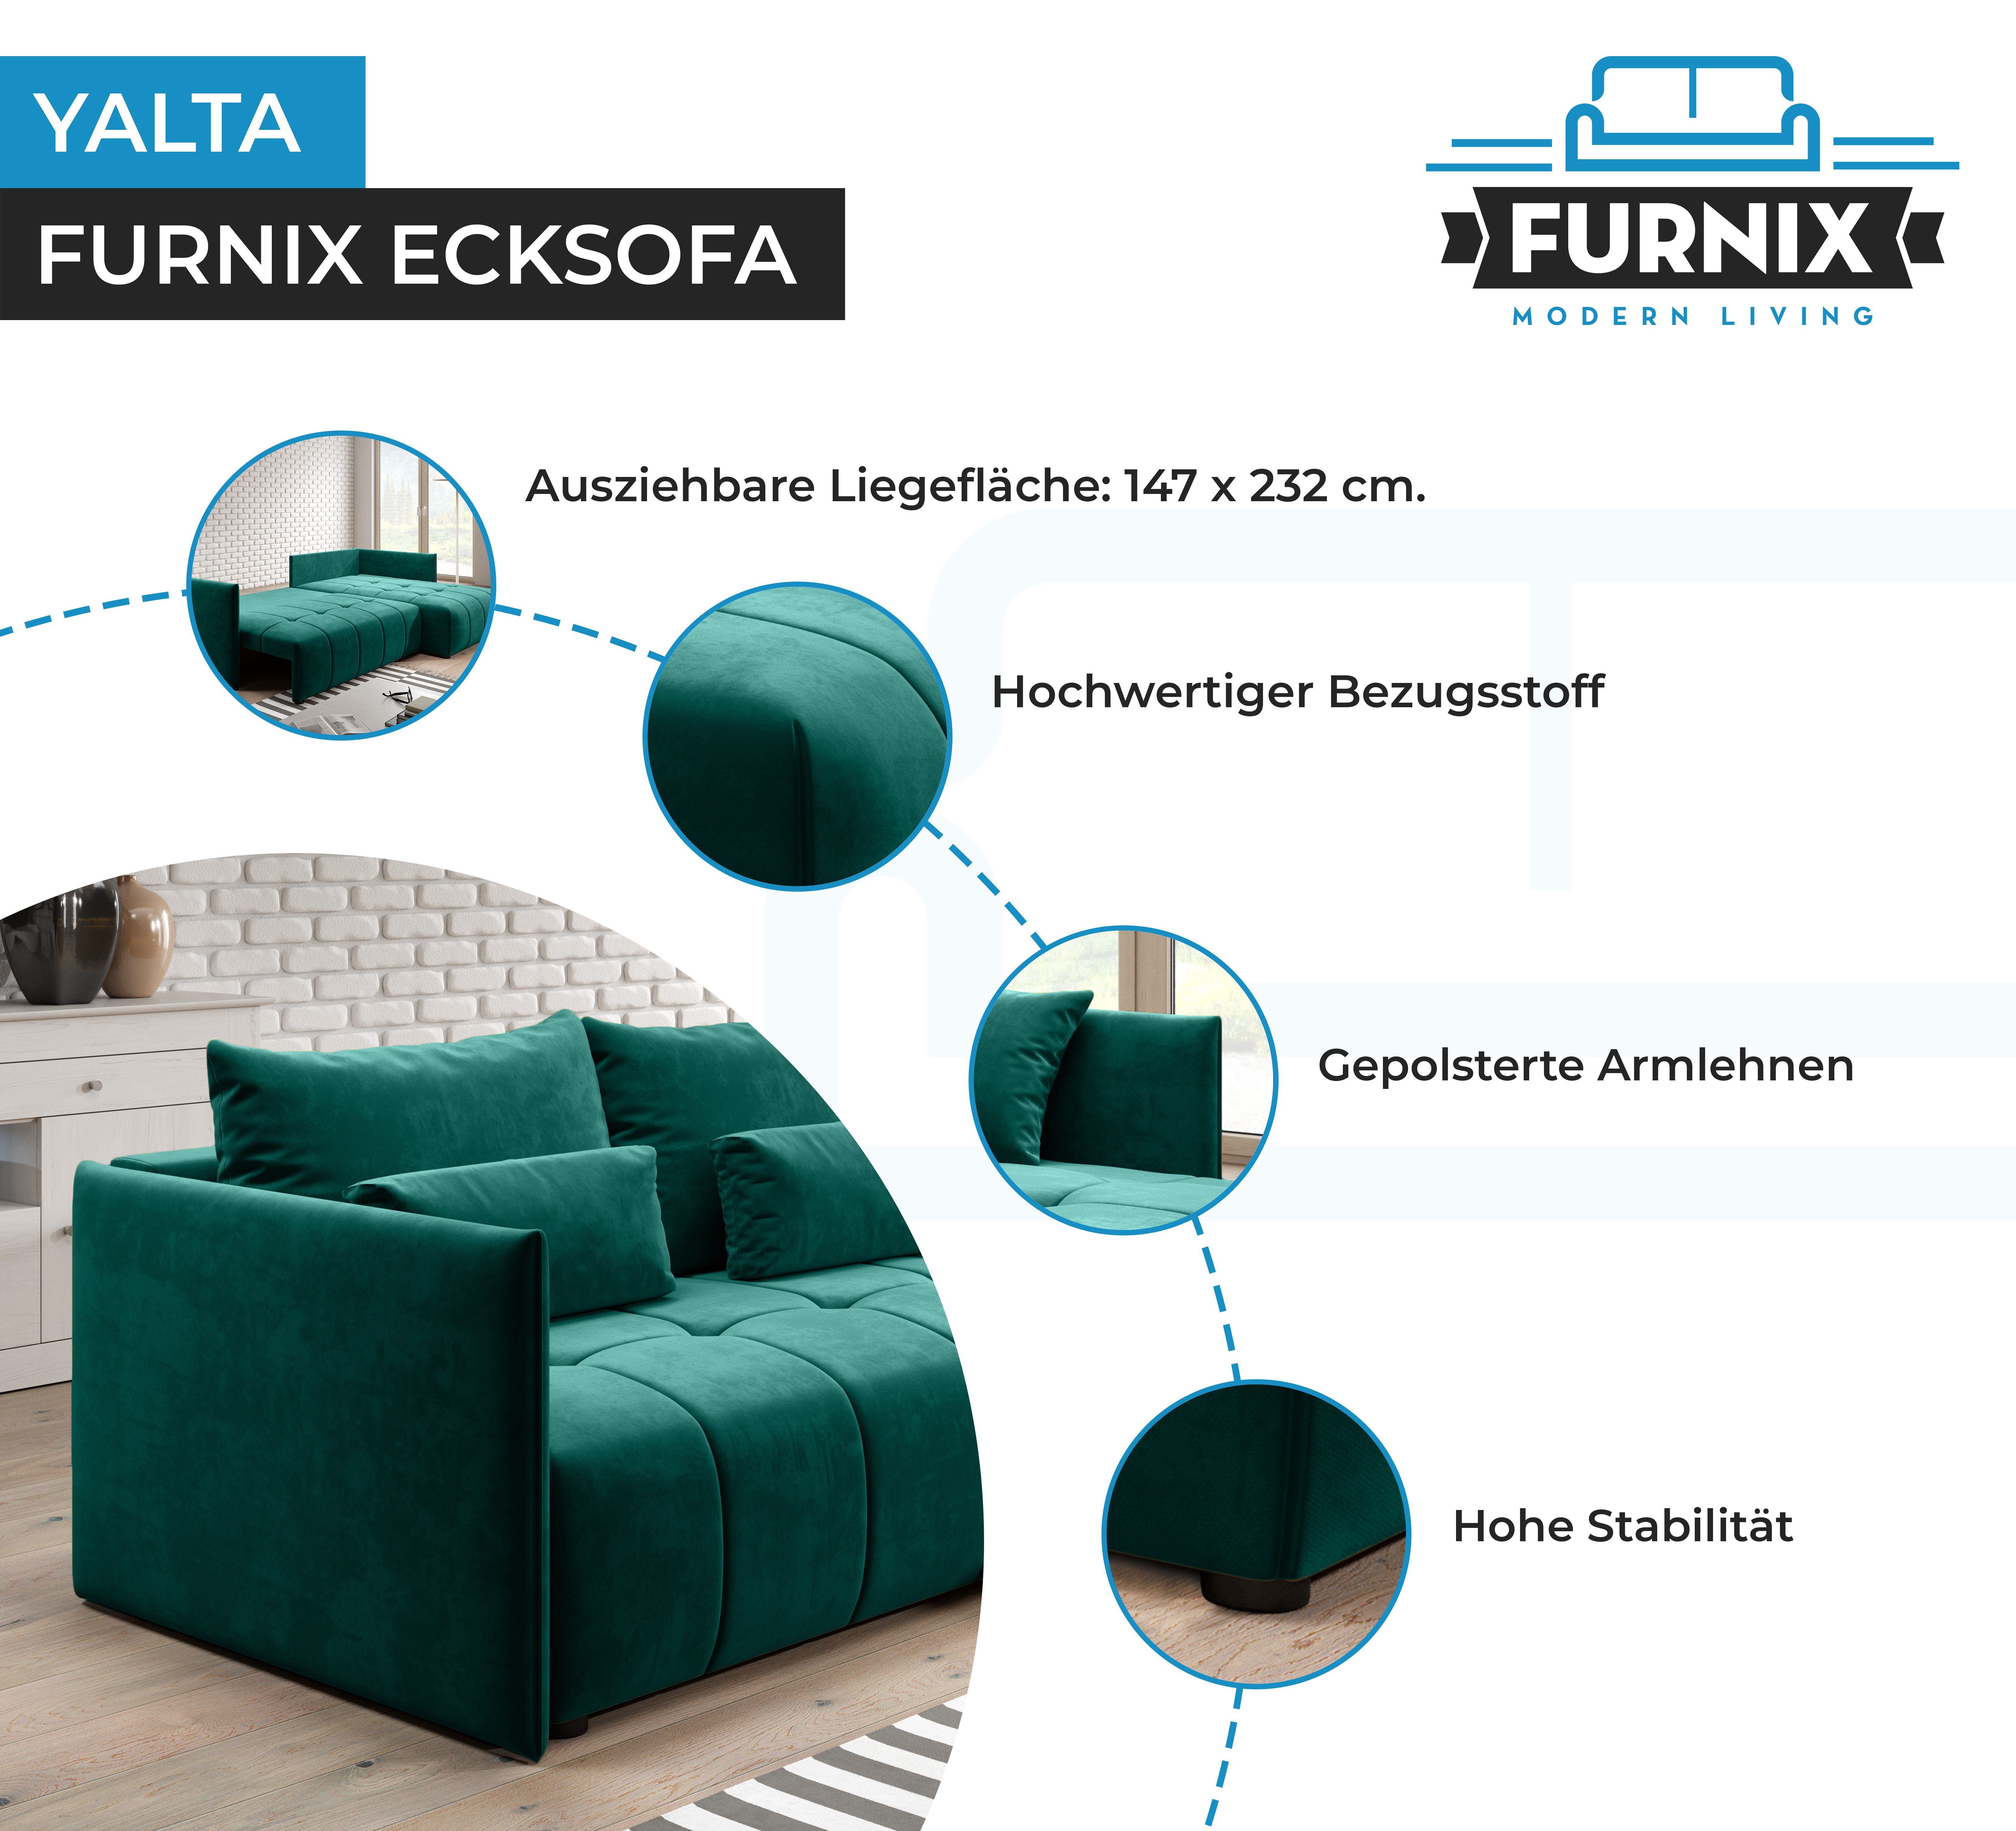 Schlafsofa und Europe Grün YALTA Couch Bettkasten mit in Ecksofa Furnix Made Kissen, MH ausziehbar 37